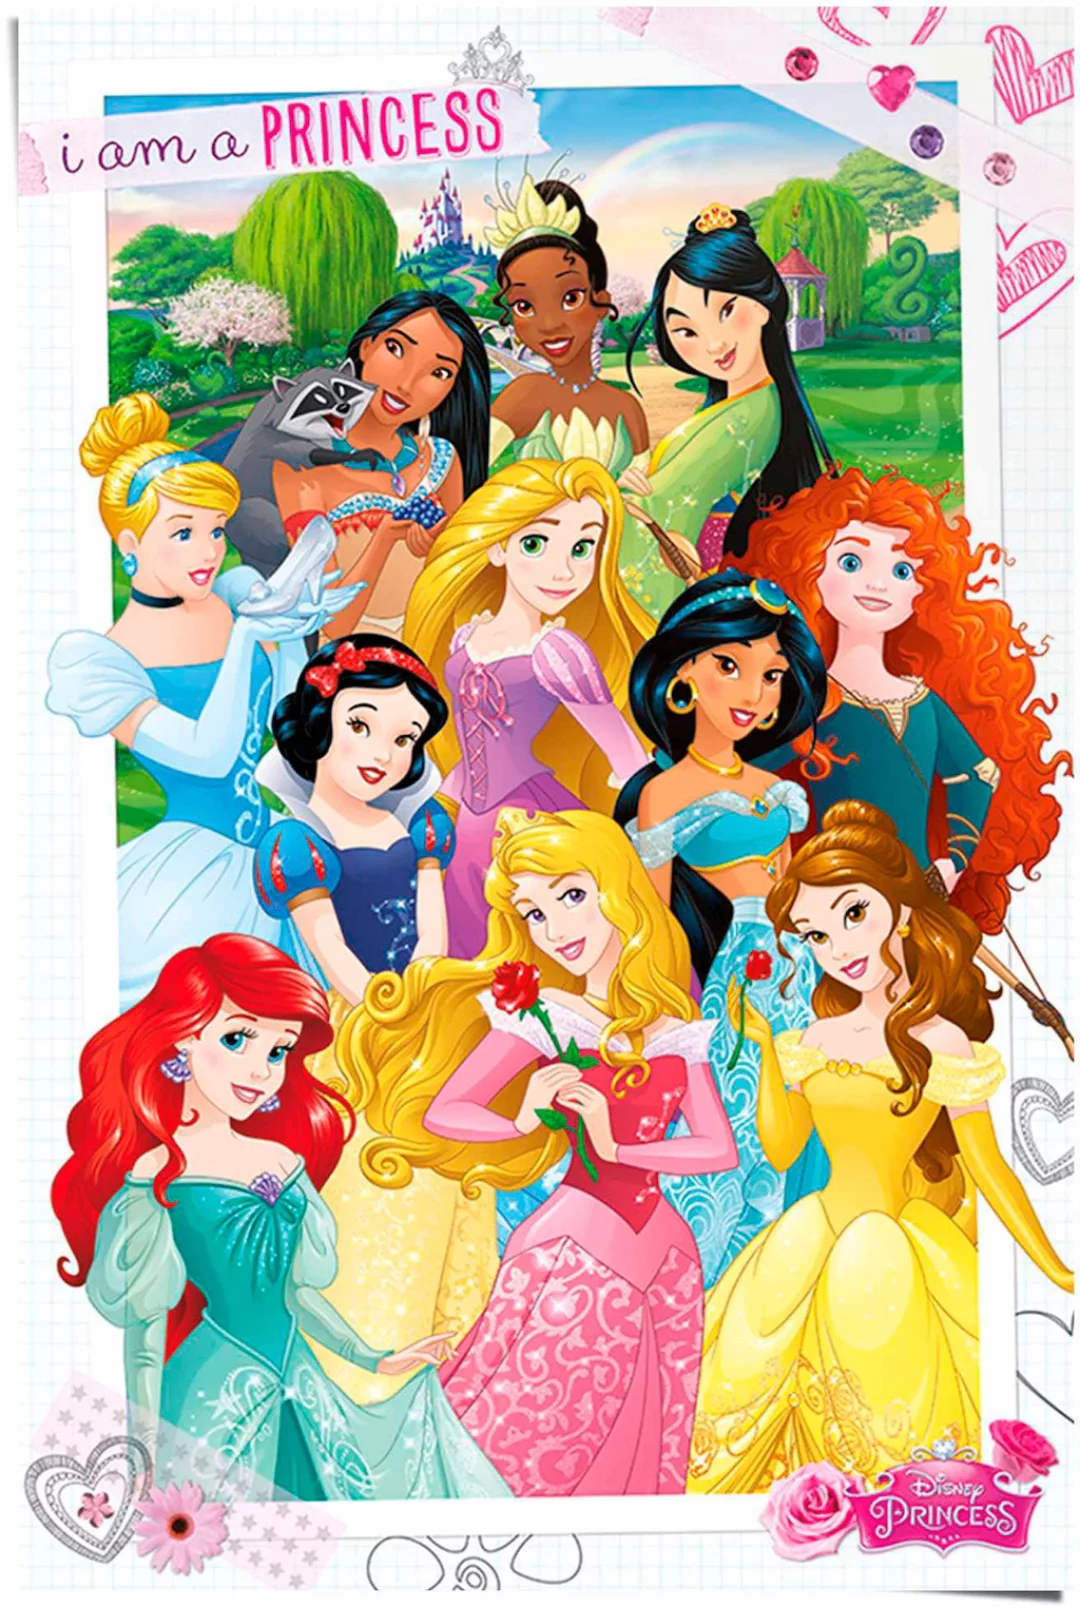 Reinders Poster "Disney Princess" günstig online kaufen